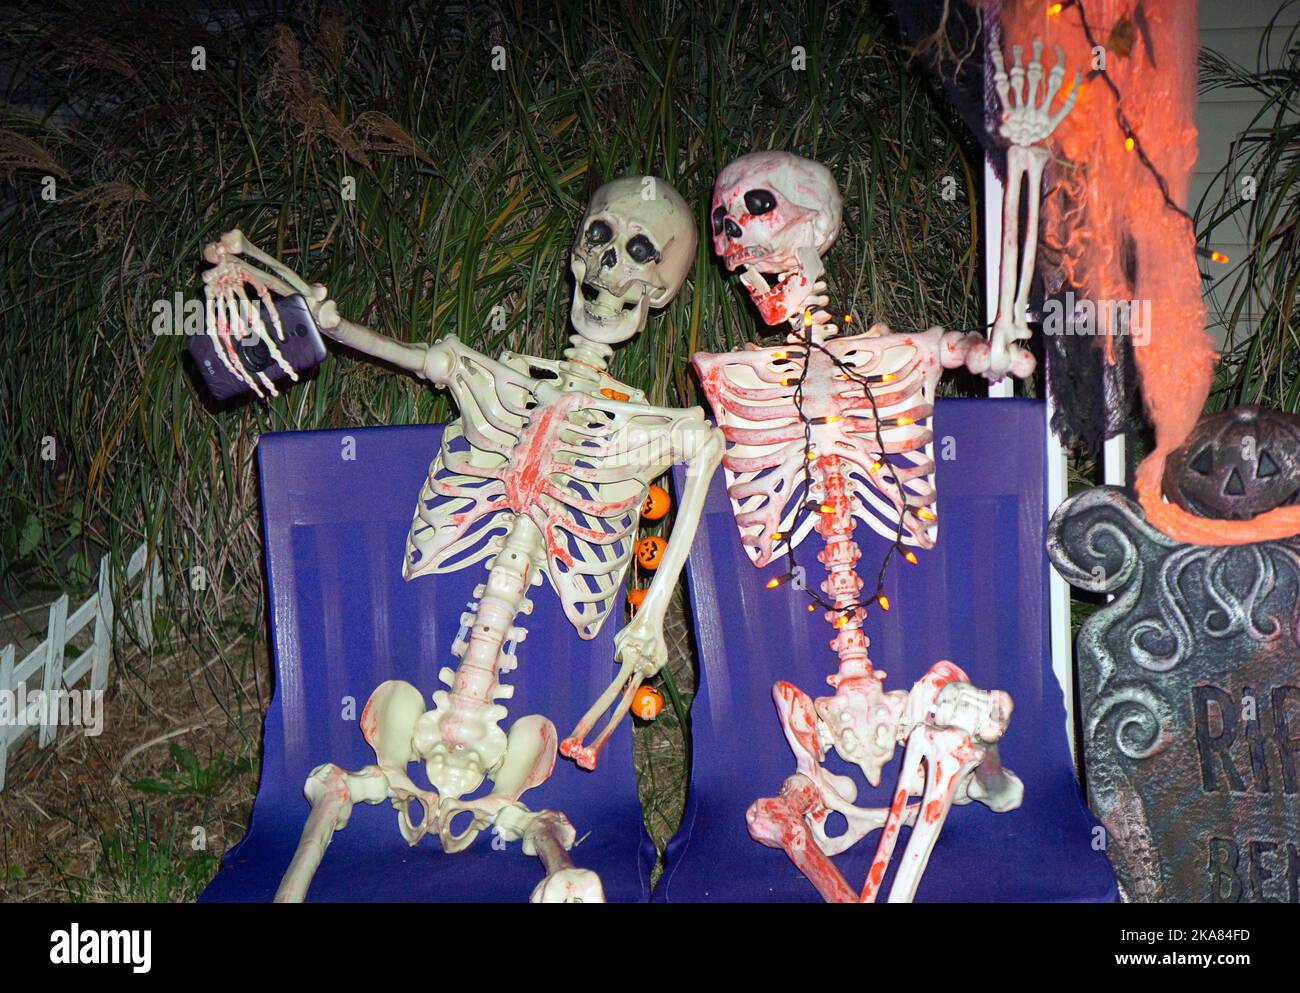 Eine lustige Halloween Rasendekoration mit 2 Skeletten, die ein Selfie machen. In Flushing, Queens, New York. Stockfoto